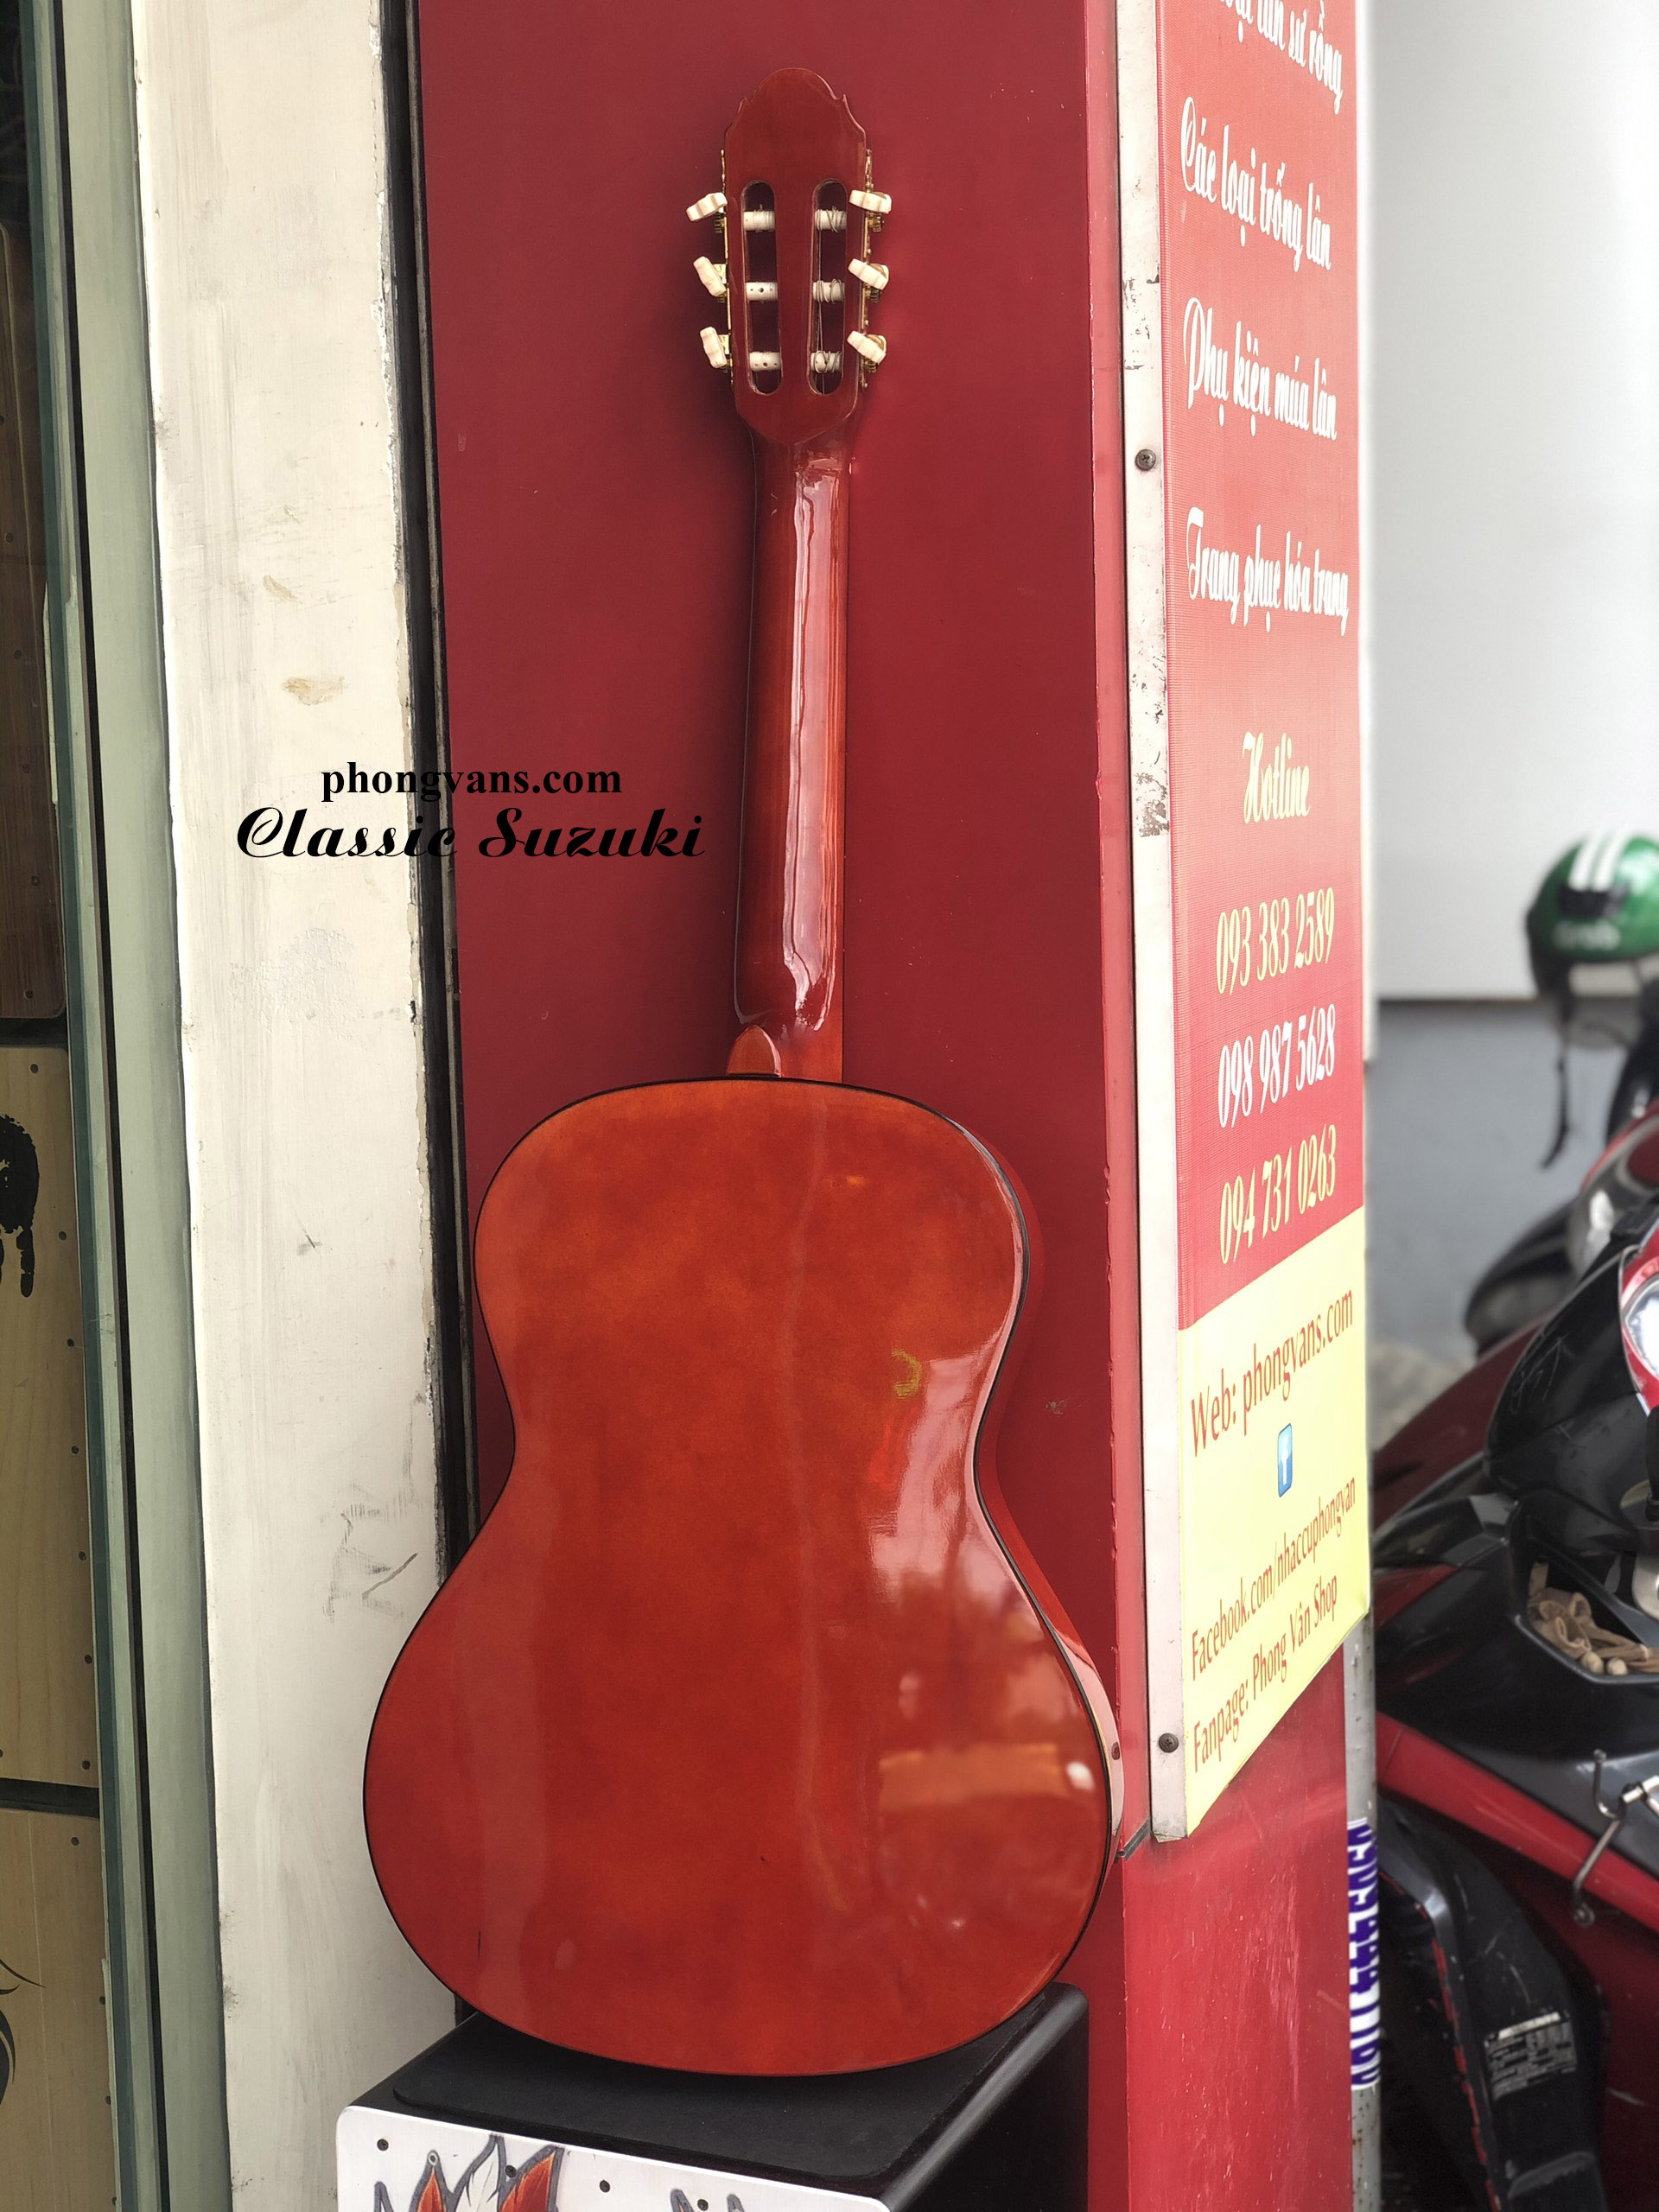 Đàn guitar classic Suzuki CG-28